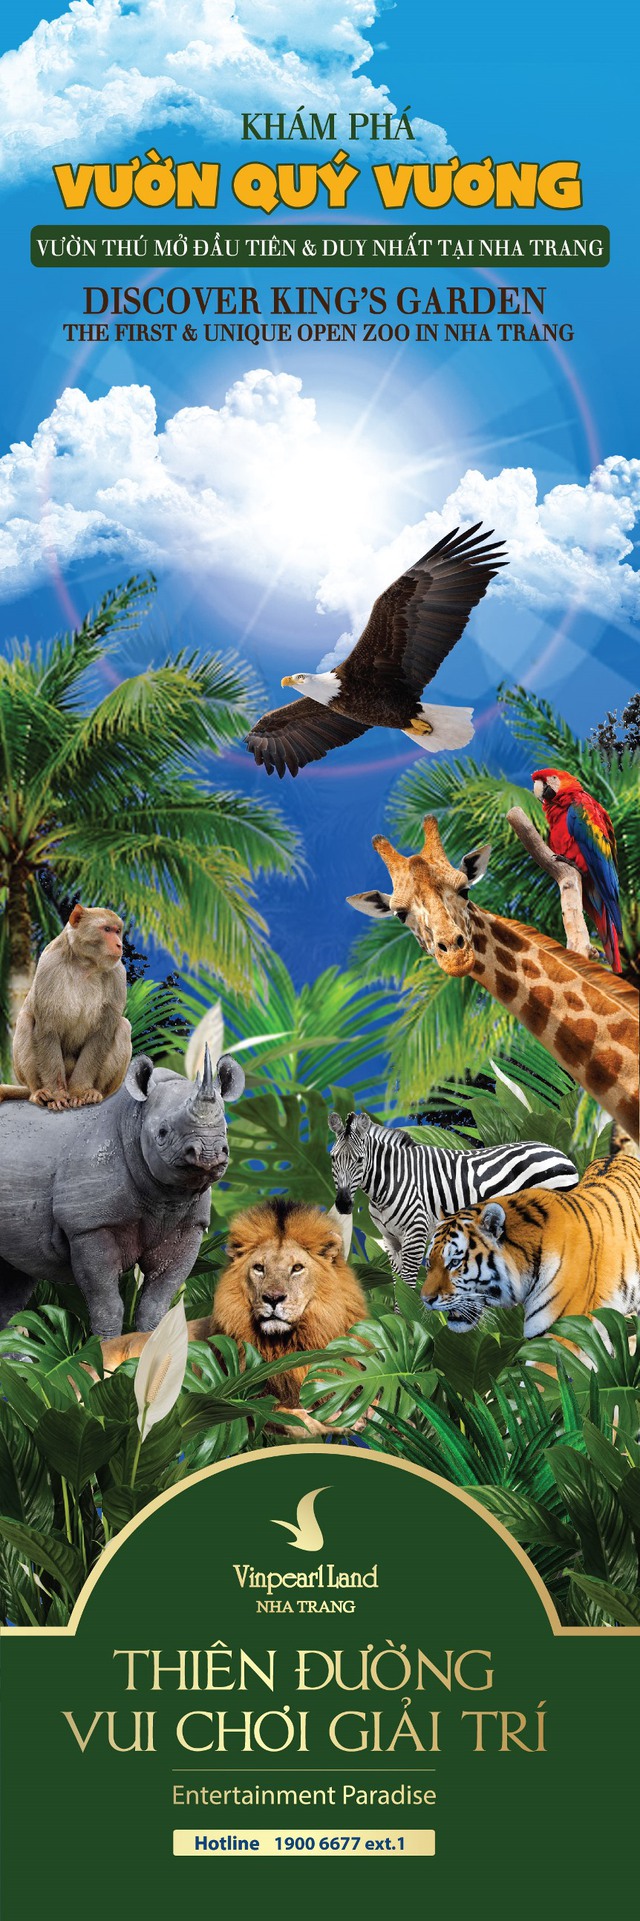 Vườn Quý Vương – vườn vườn thú mở đầu tiên và duy nhất tại Nha Trang